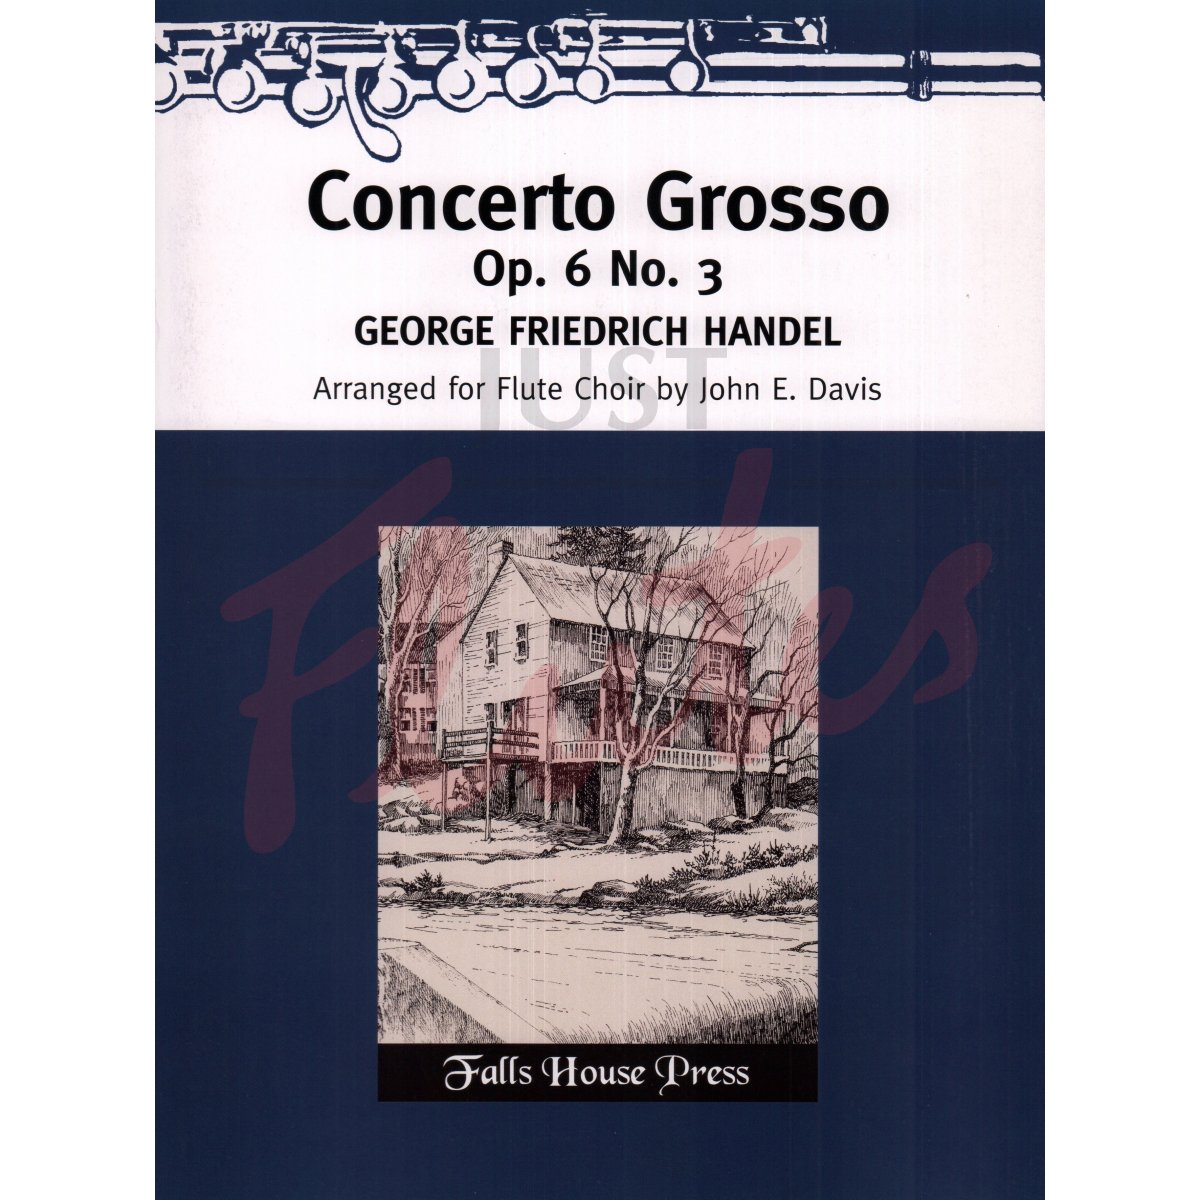 Concerto Grosso for Flute Choir